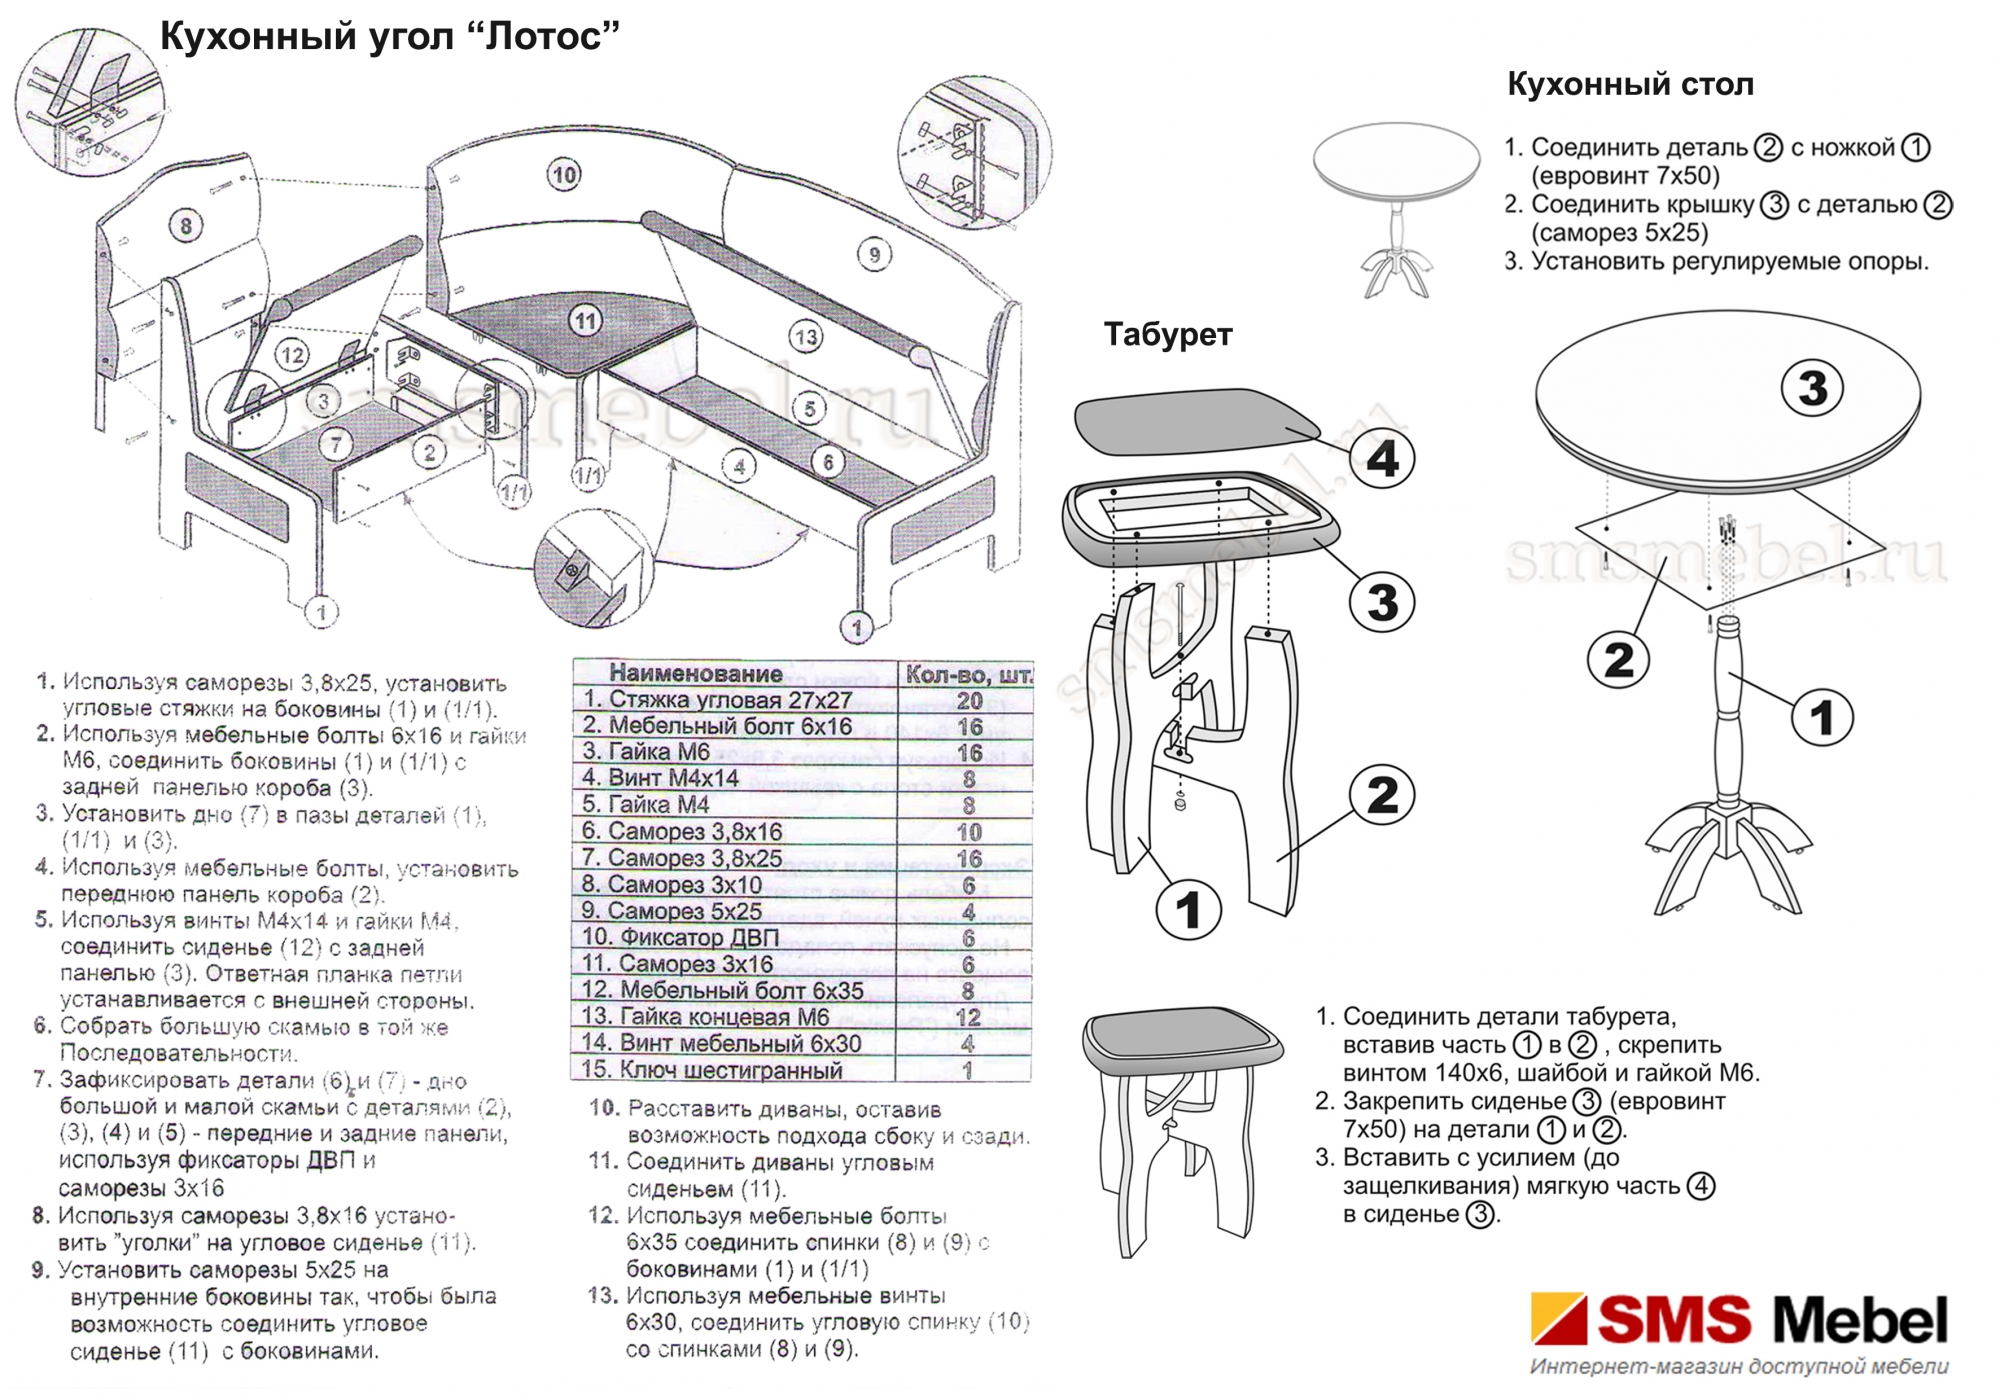 Инструкция по сборке кухонного стола